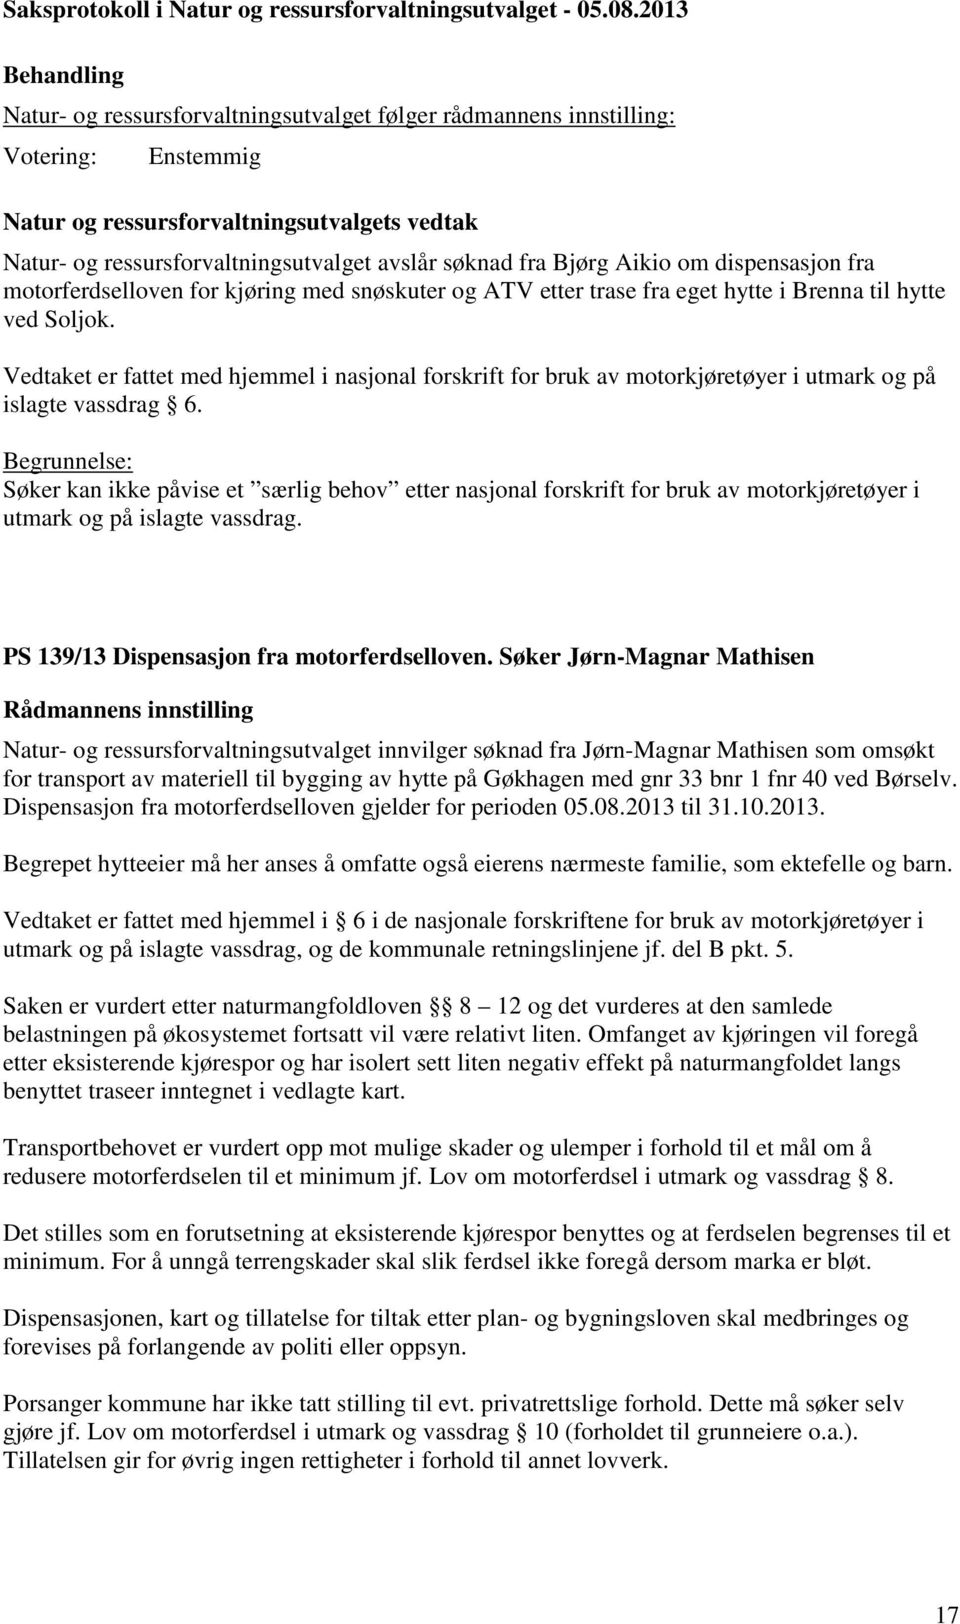 Søker Jørn-Magnar Mathisen Natur- og ressursforvaltningsutvalget innvilger søknad fra Jørn-Magnar Mathisen som omsøkt for transport av materiell til bygging av hytte på Gøkhagen med gnr 33 bnr 1 fnr